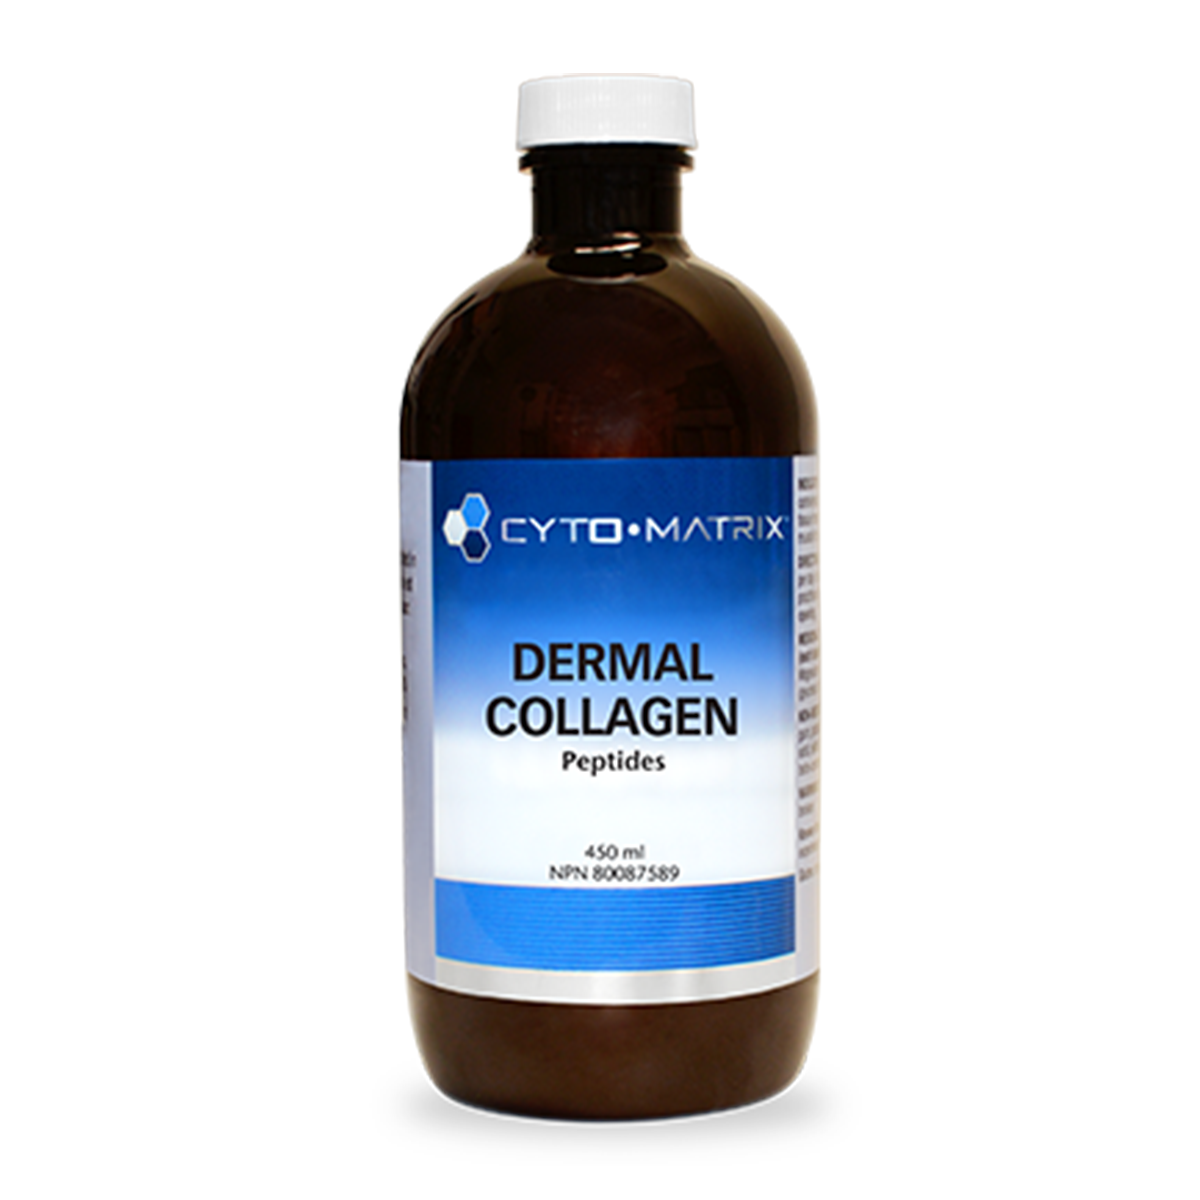 Cyto Matrix Dermal Collagen Peptides 450ml